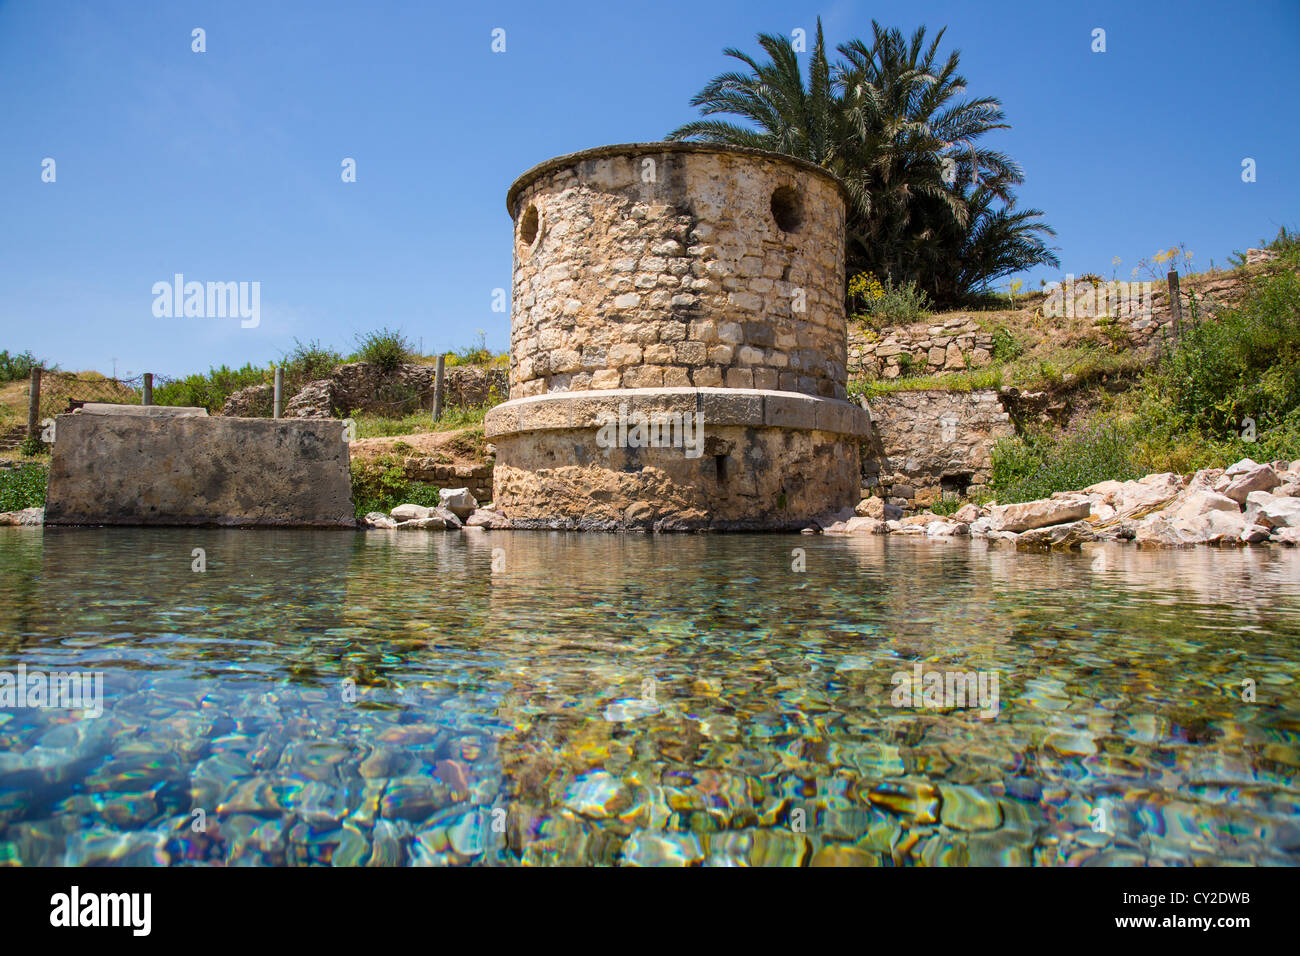 Manantial natural en las ruinas romanas de Bulla Regia cerca de Jendouba Túnez Foto de stock